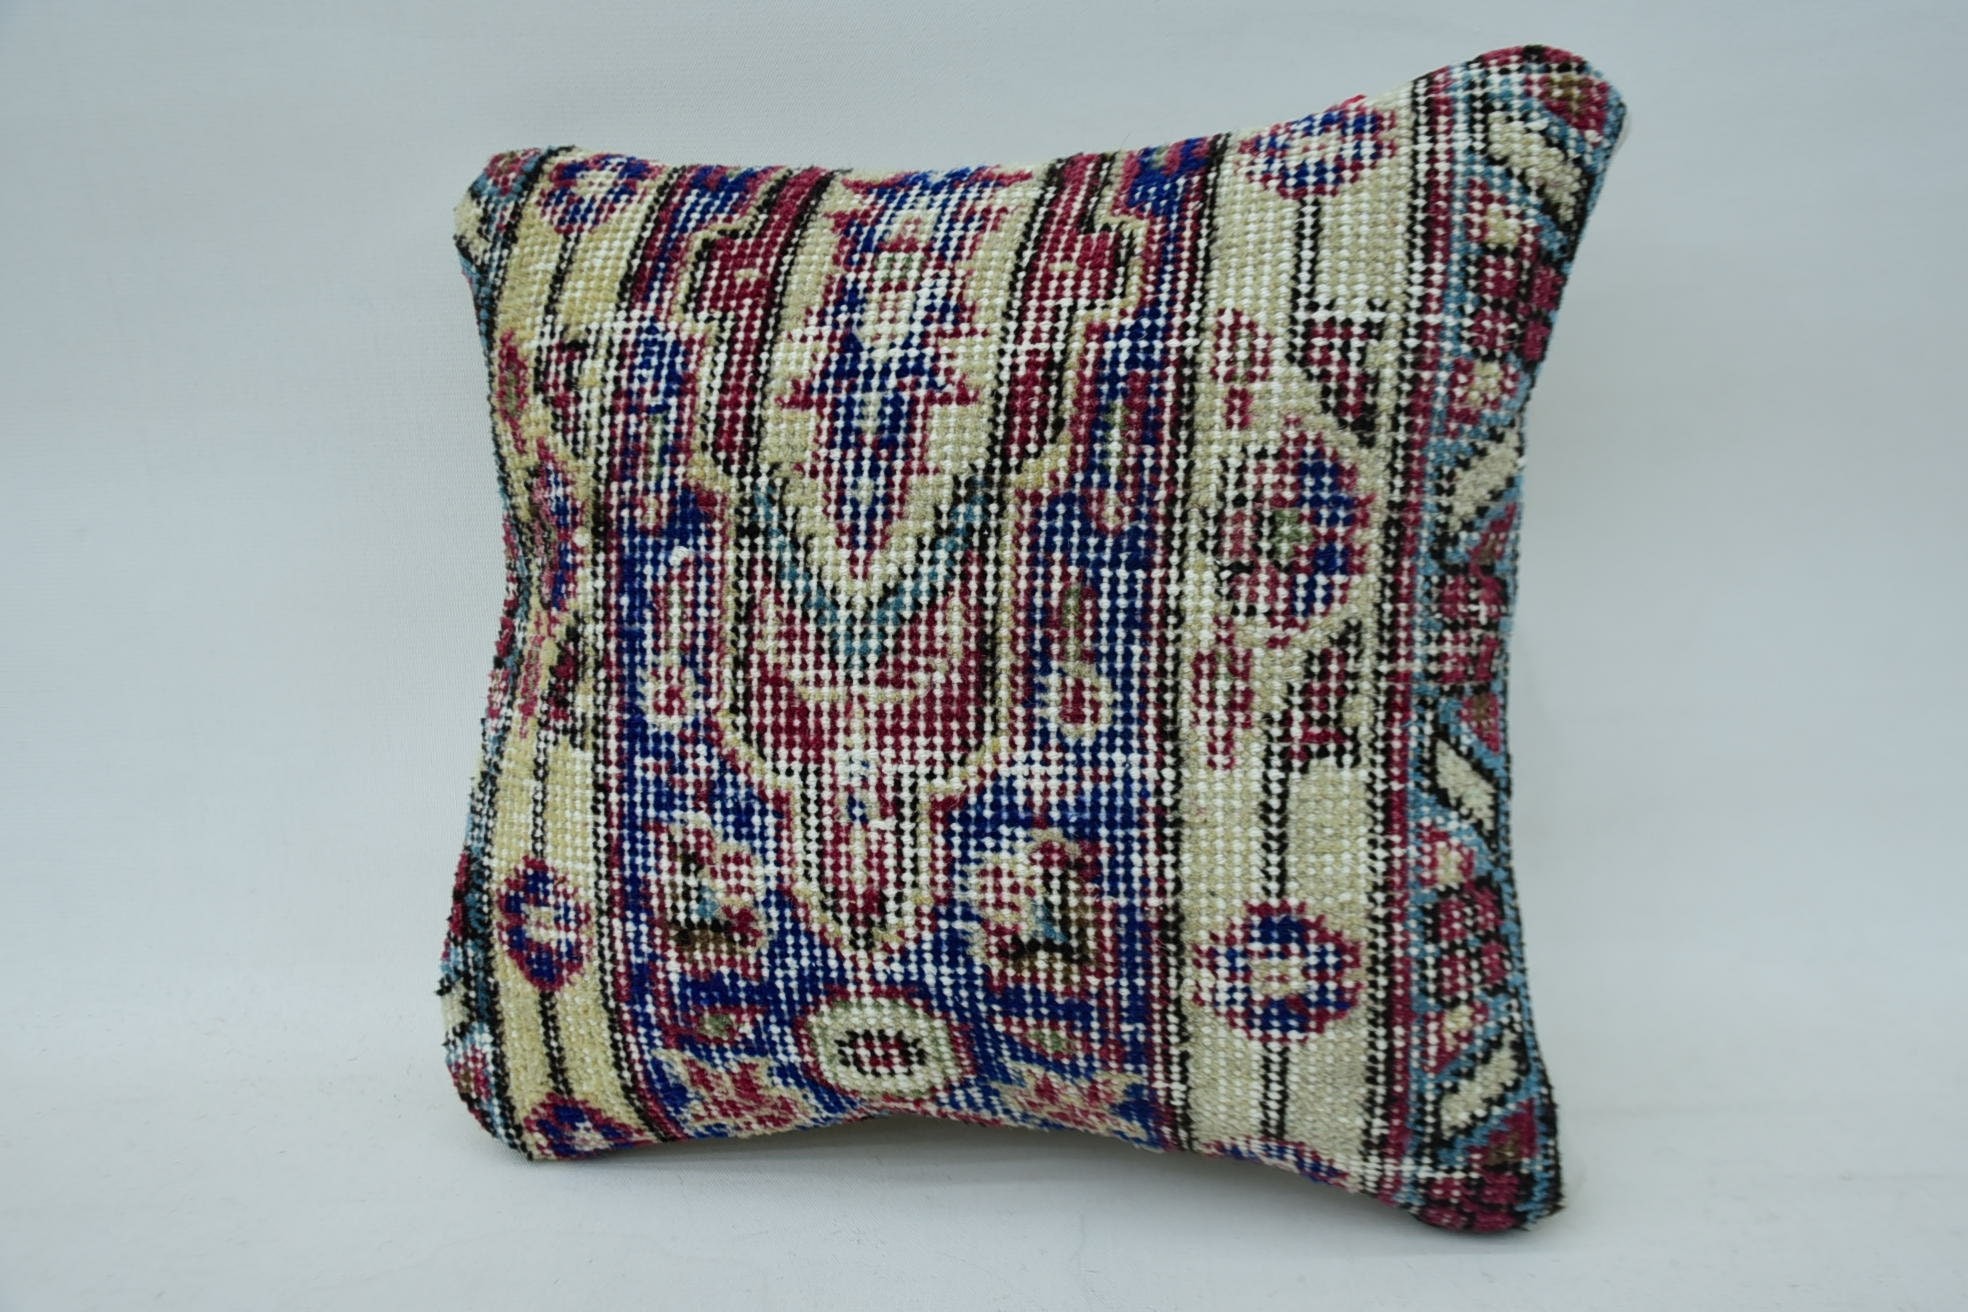 12"x12" Blue Cushion Cover, Pillow for Sofa, Decorative Throw Pillow Sham, Antique Pillows, Gift Pillow, Nautical Throw Cushion